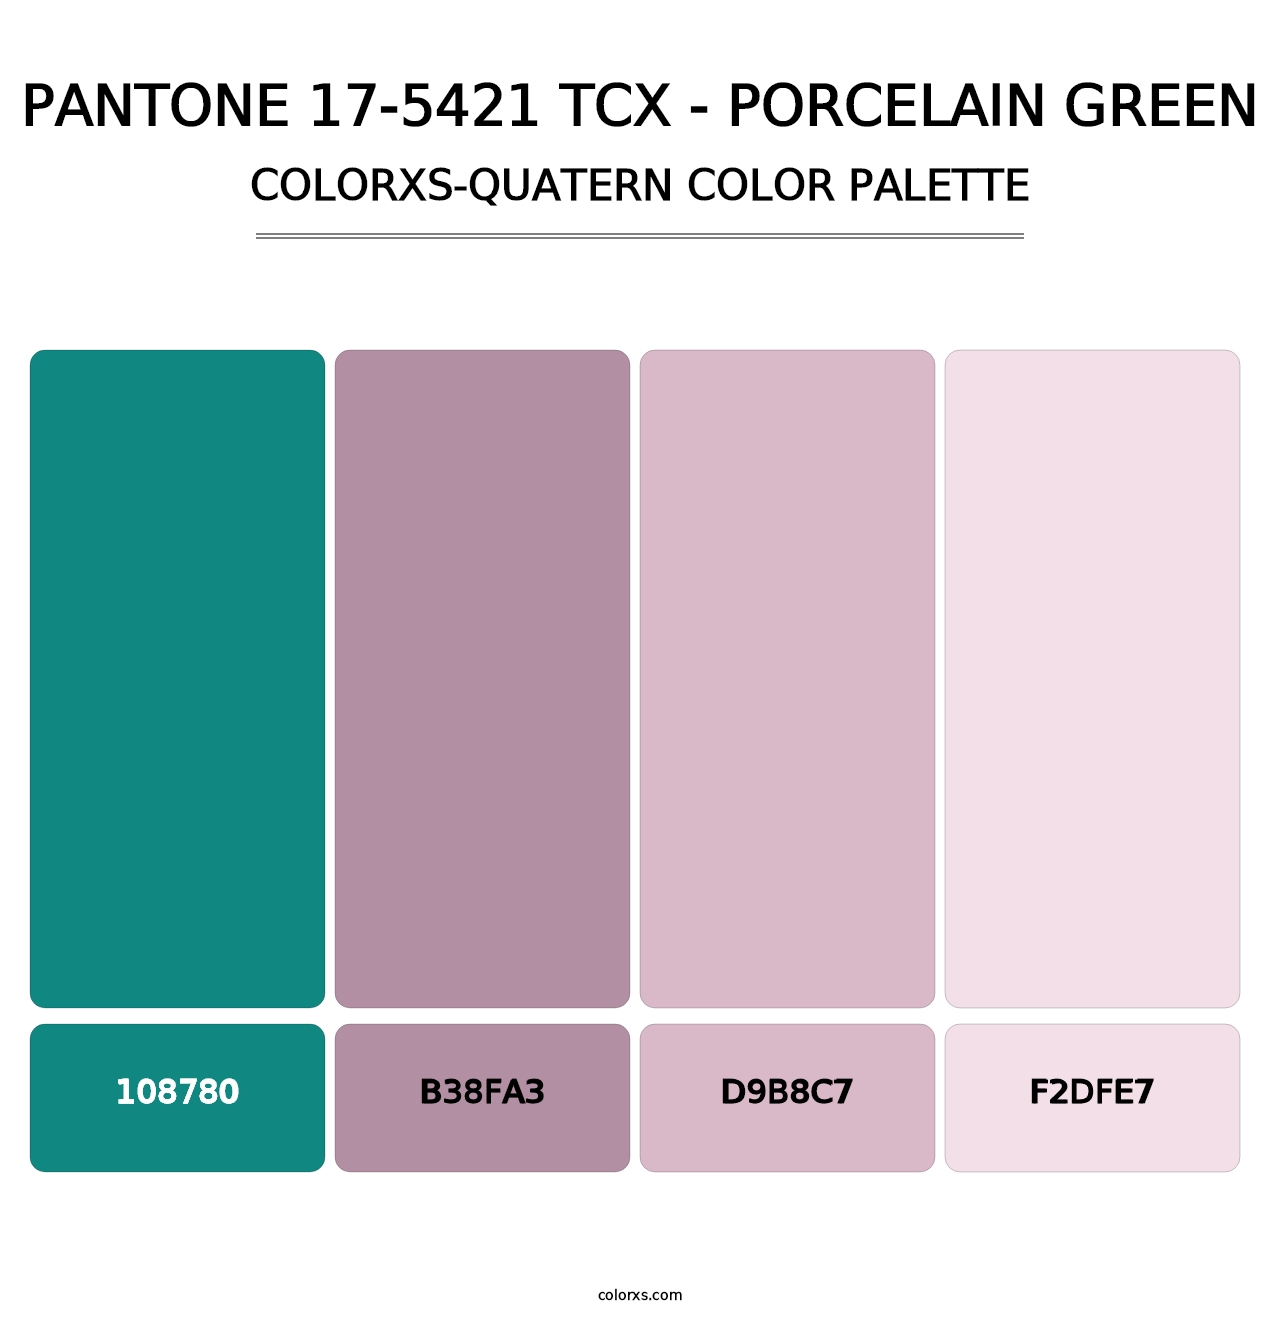 PANTONE 17-5421 TCX - Porcelain Green - Colorxs Quatern Palette